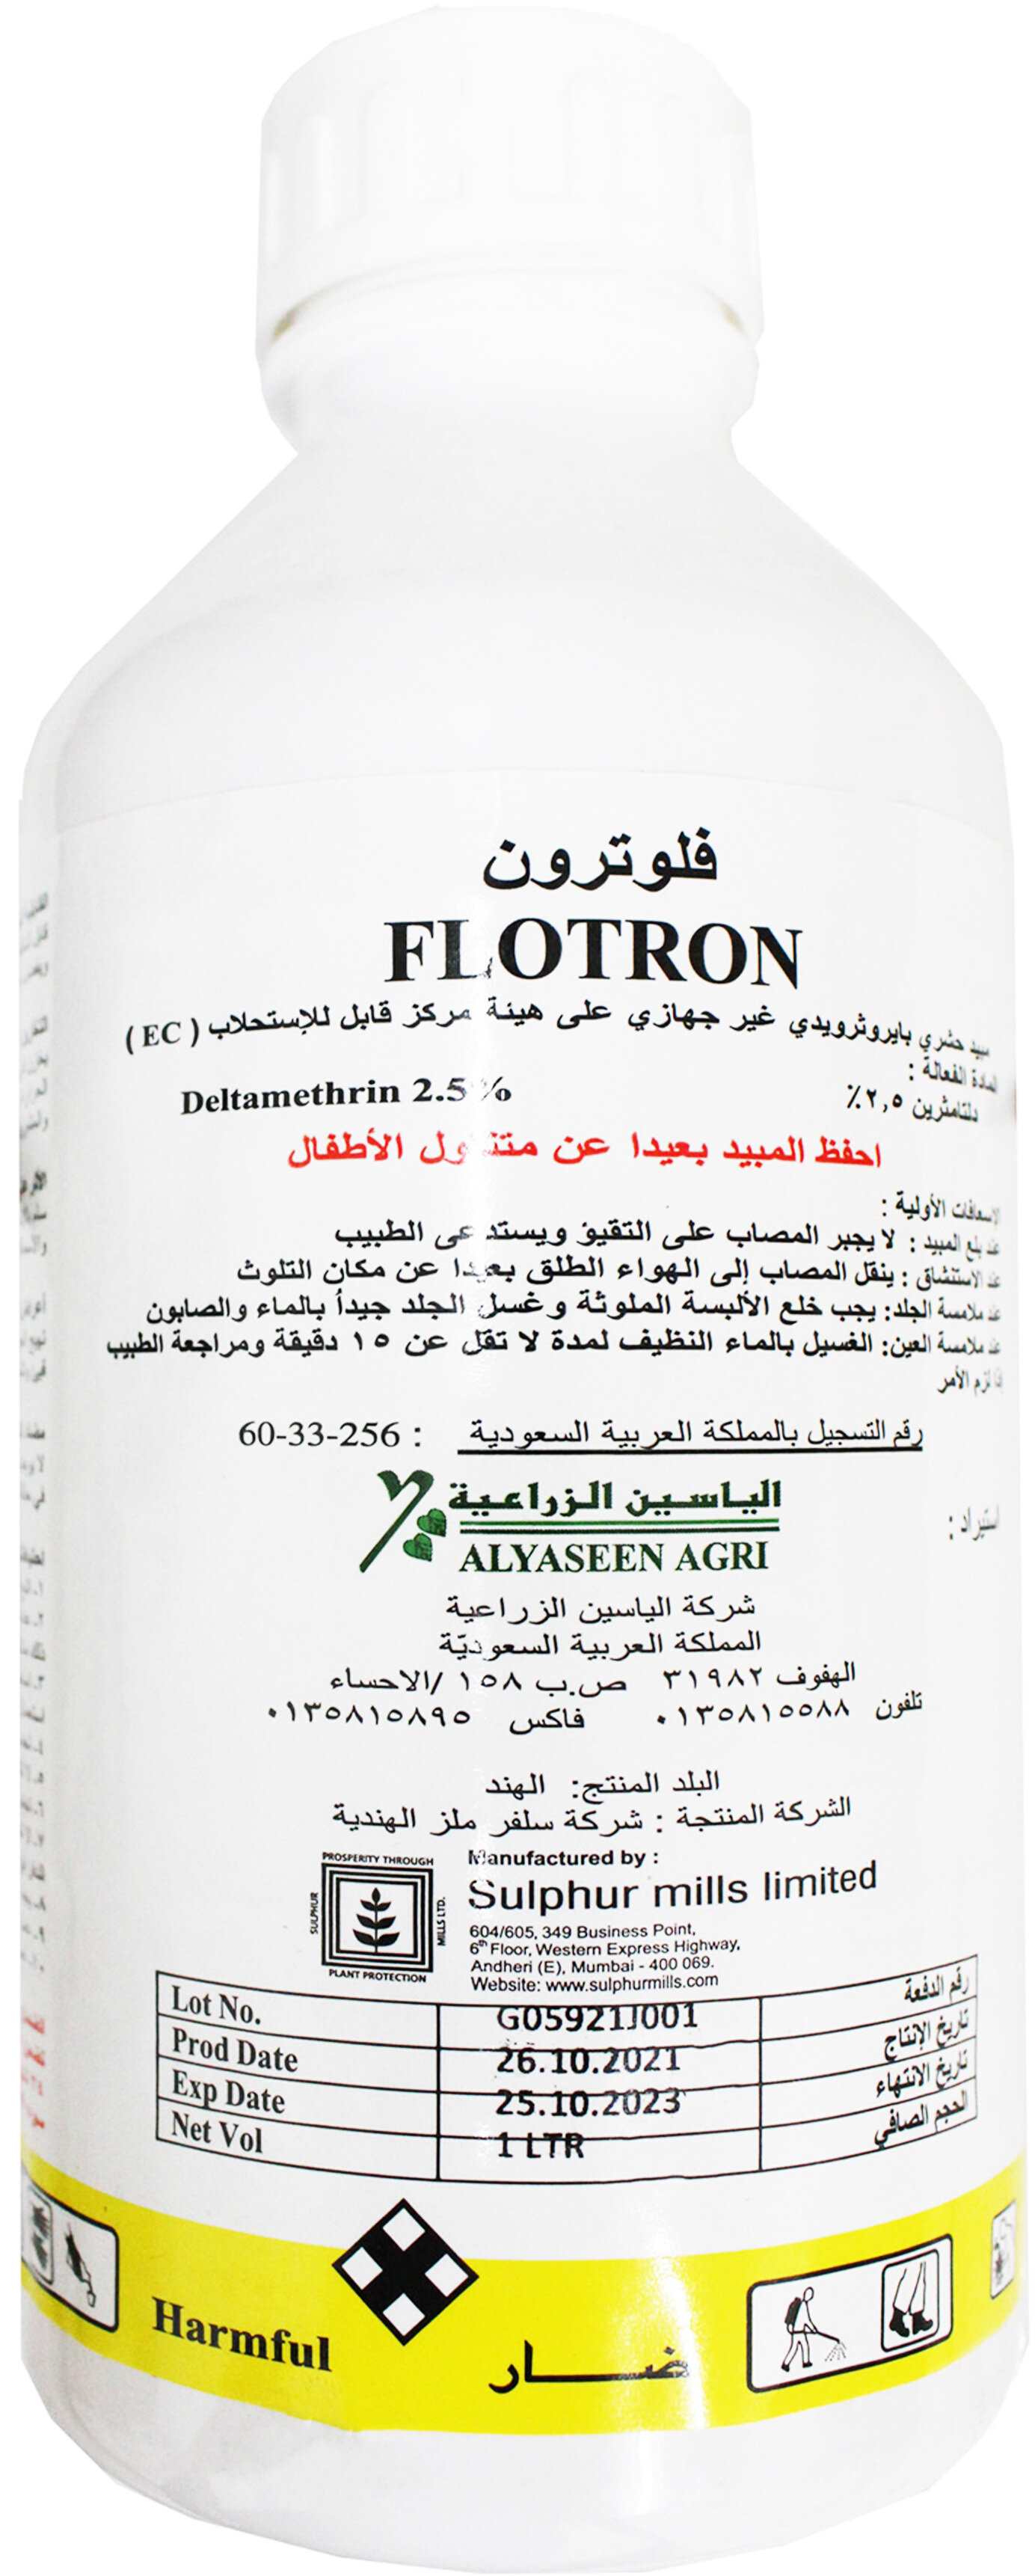 Flotron (Deltamethrin 2.5 EC)